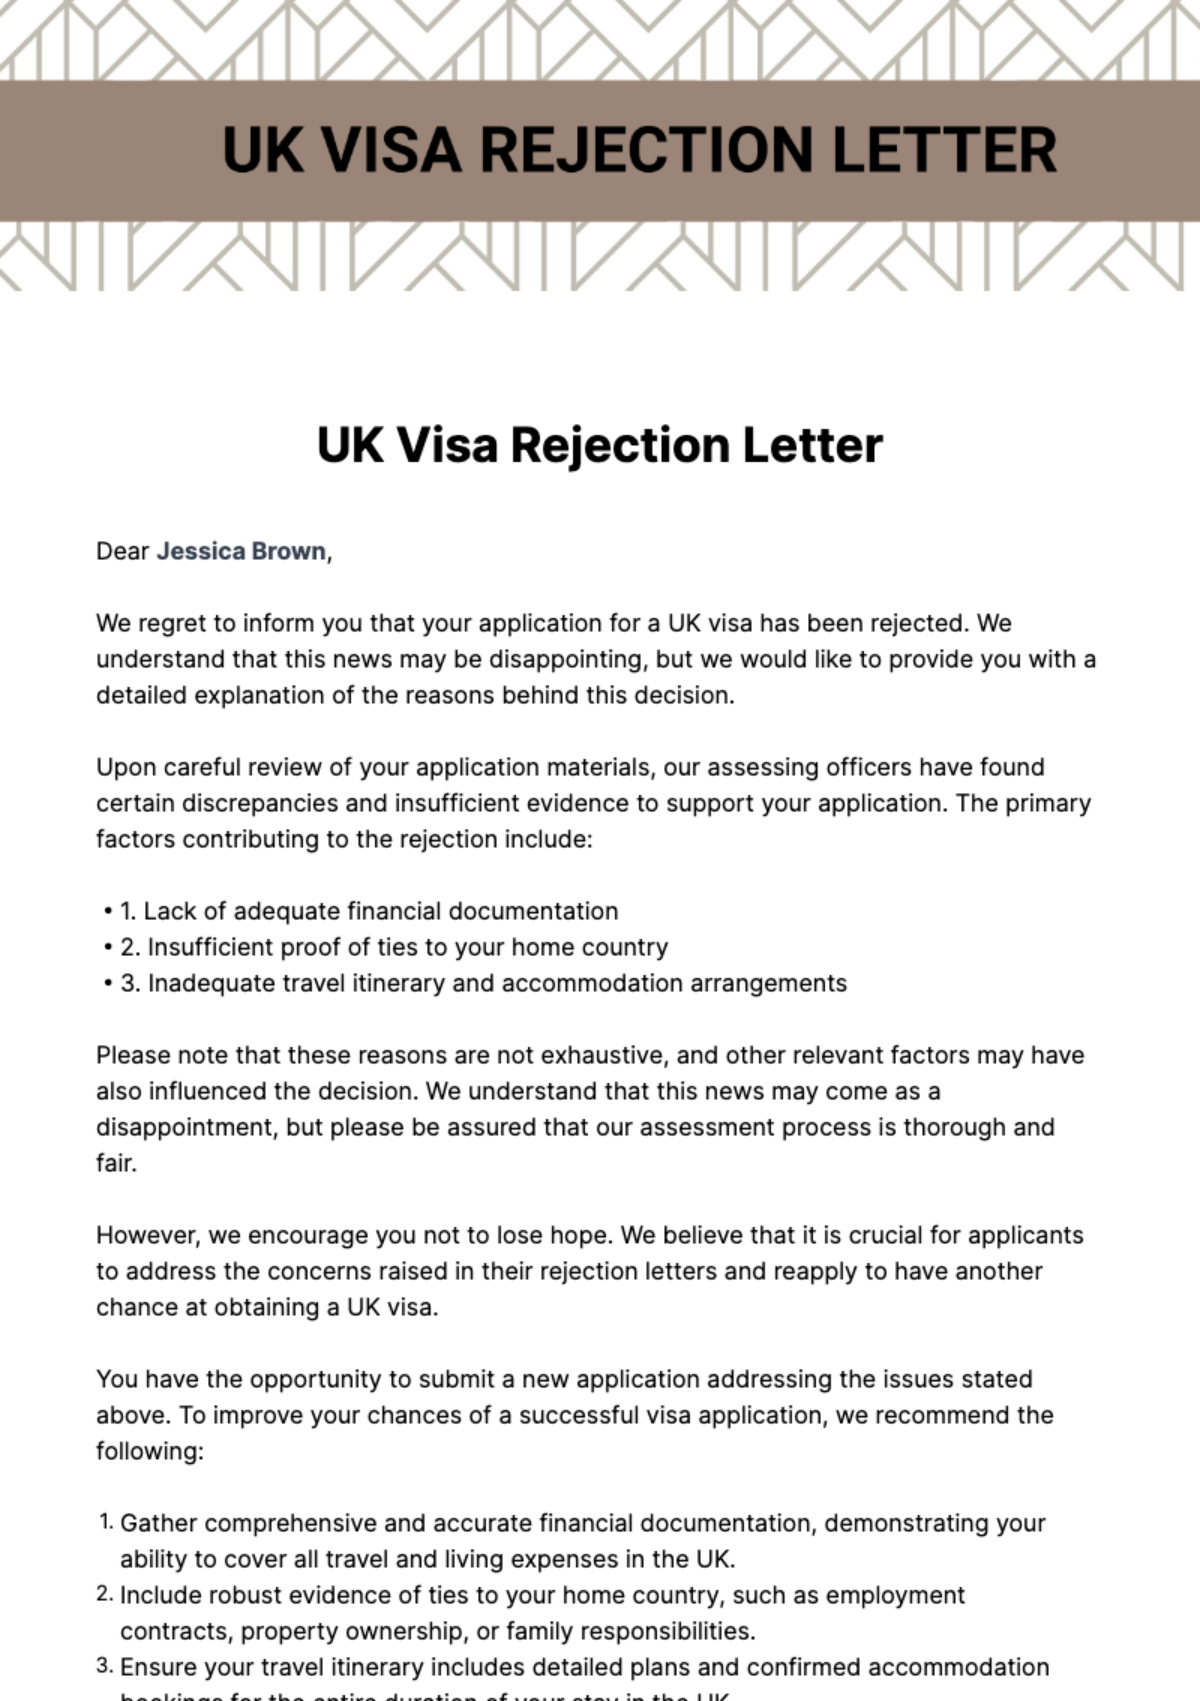 Free Uk Visa Rejection Letter Template